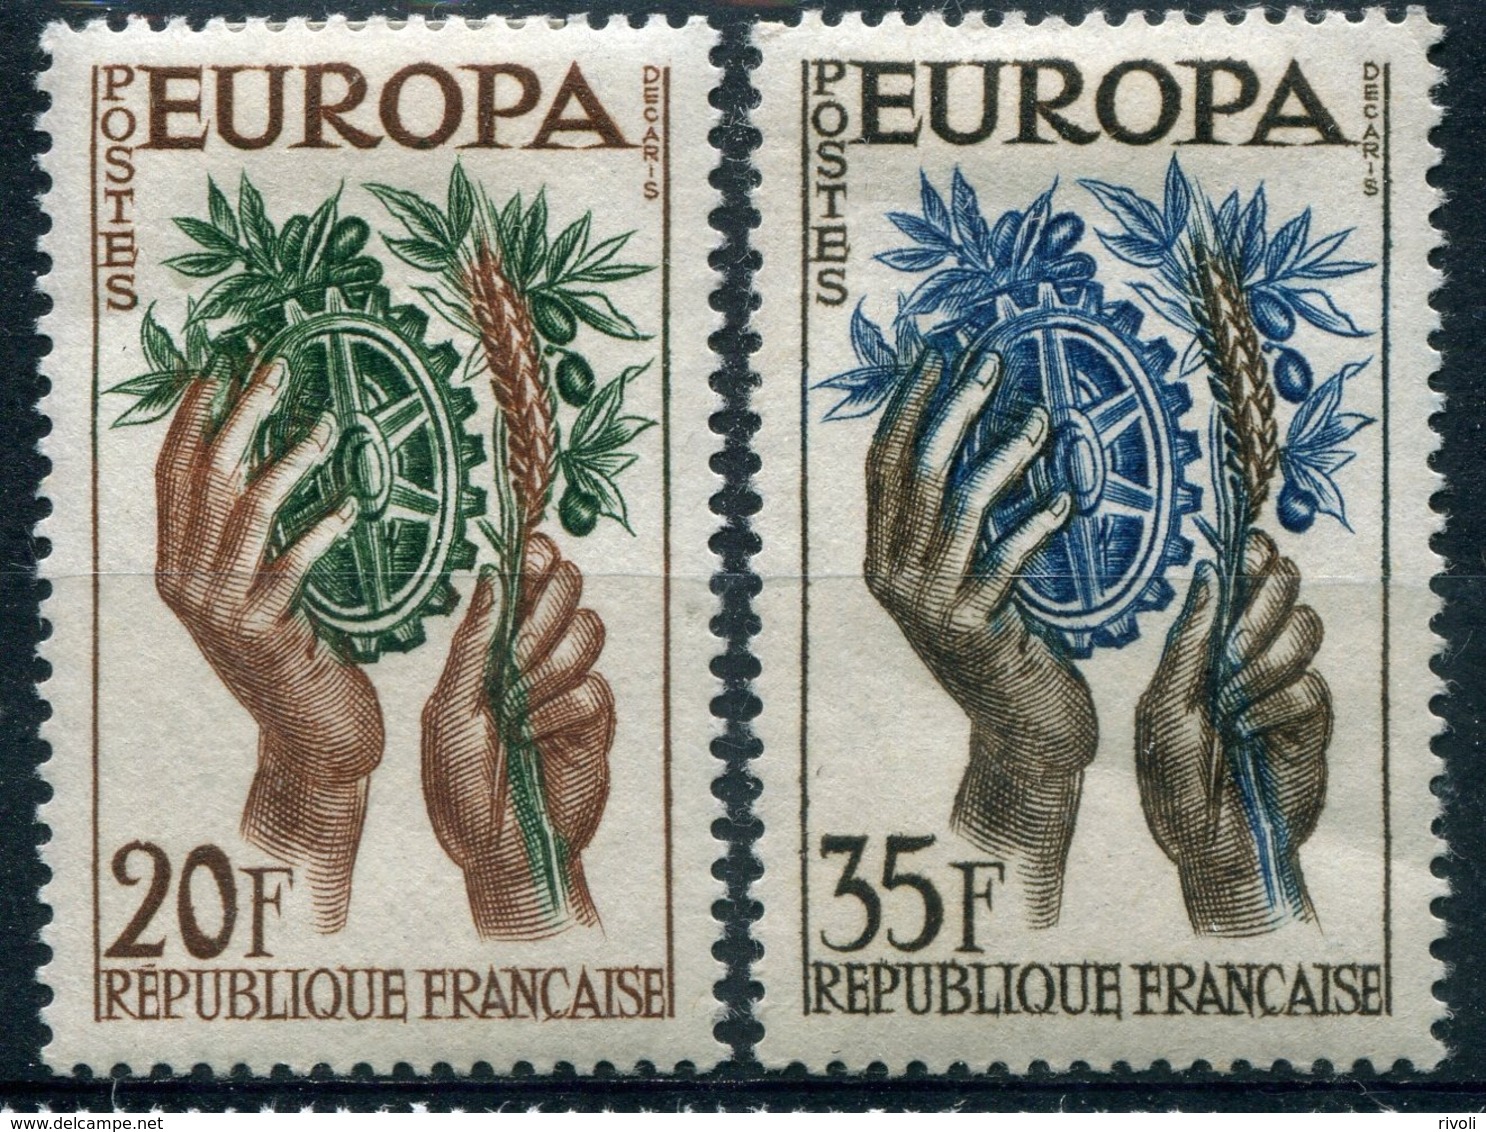 France - Europa CEPT 1957 - Yvert Nr. 1122/1123 - Michel Nr. 1157/1158 ** - 1957